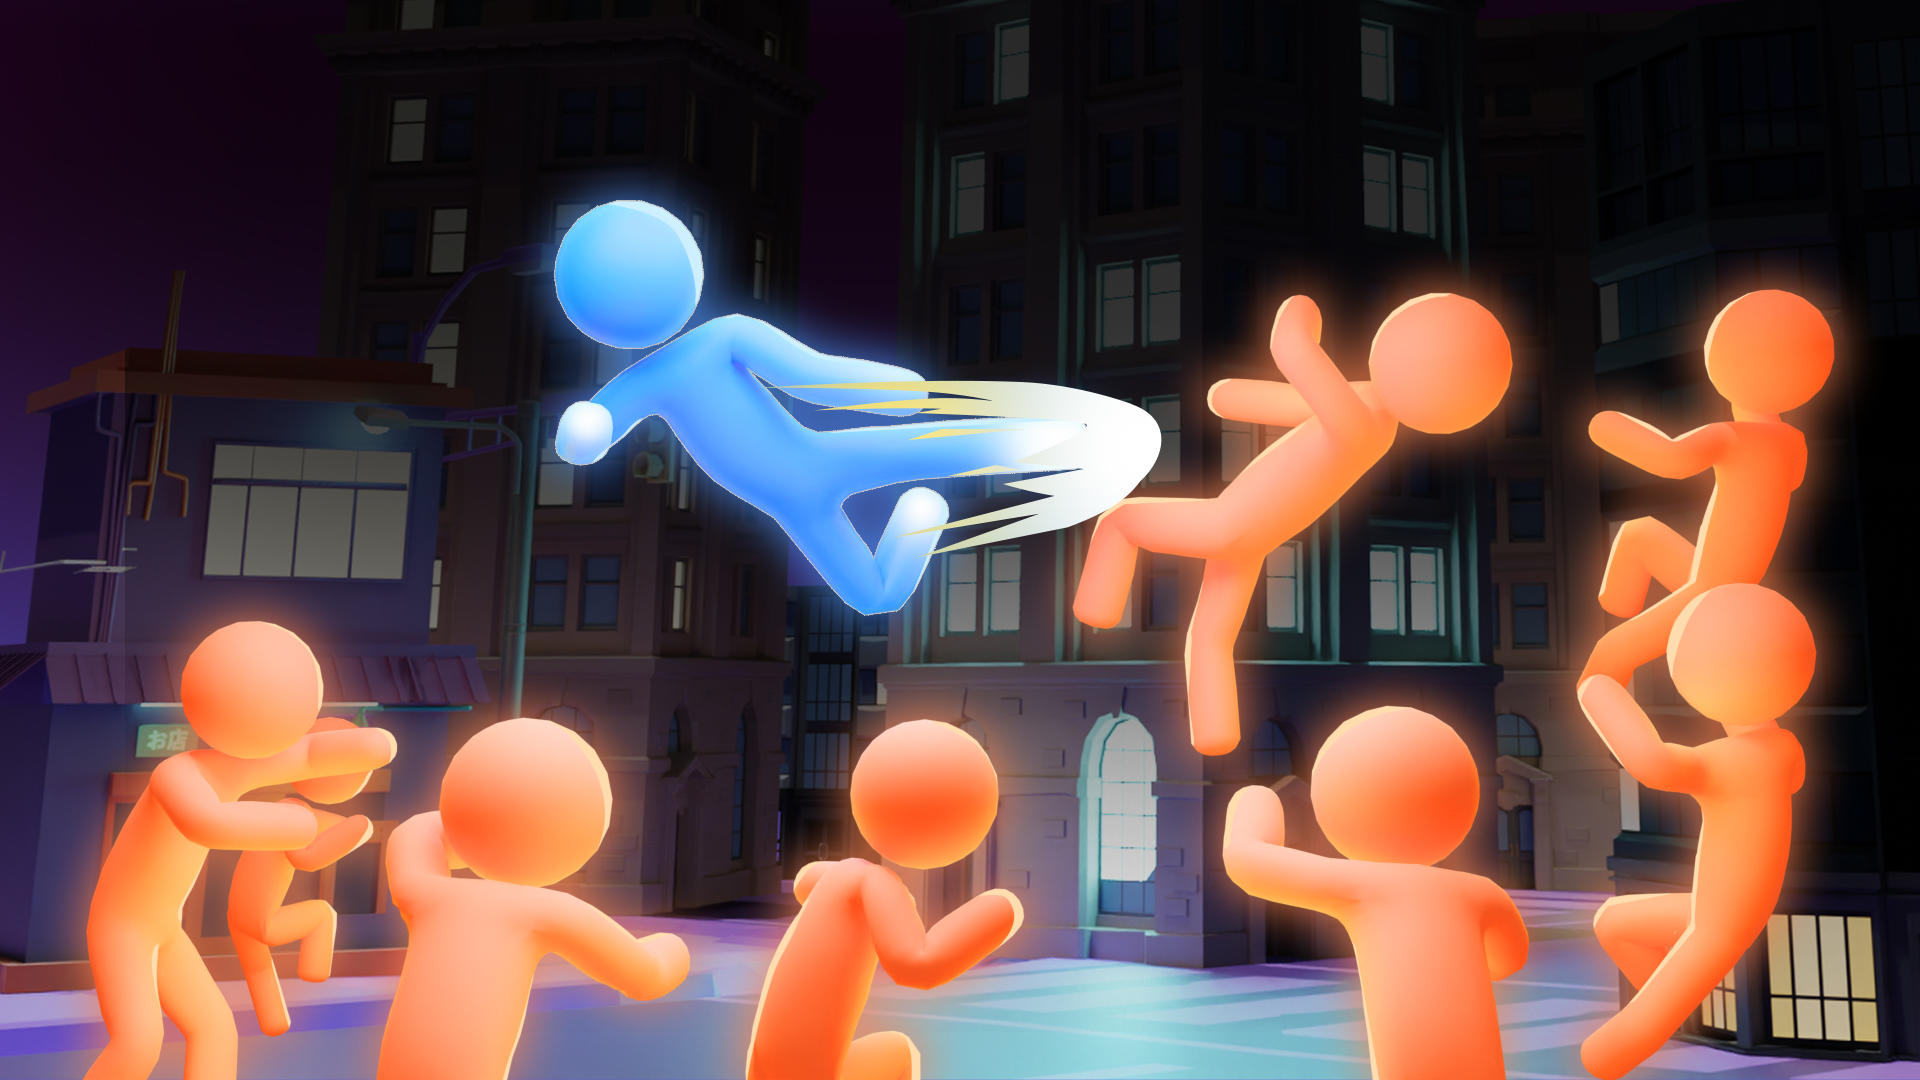 Stickman Fighter Infinity Super heróis de ação versão móvel andróide iOS apk  baixar gratuitamente-TapTap